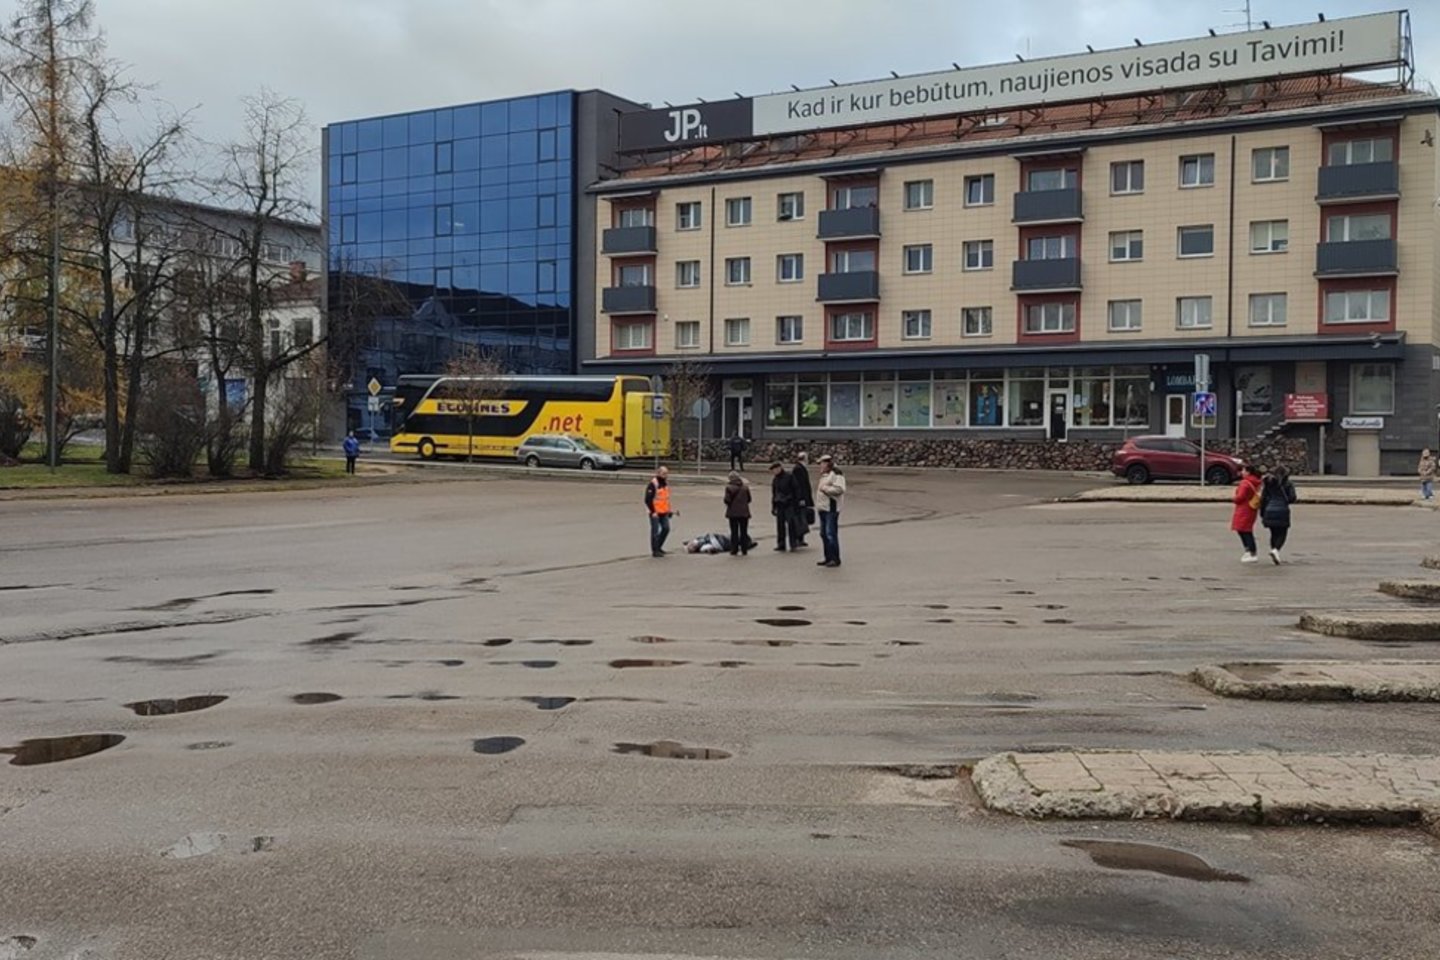  Tragiška nelaimė pirmadienį ryte Panevėžio autobusų stotyje: autobuso mirtinai partrenktas žmogus.<br> Facebook grupės "Mentai PNVŽ" vartotojo nuotr.